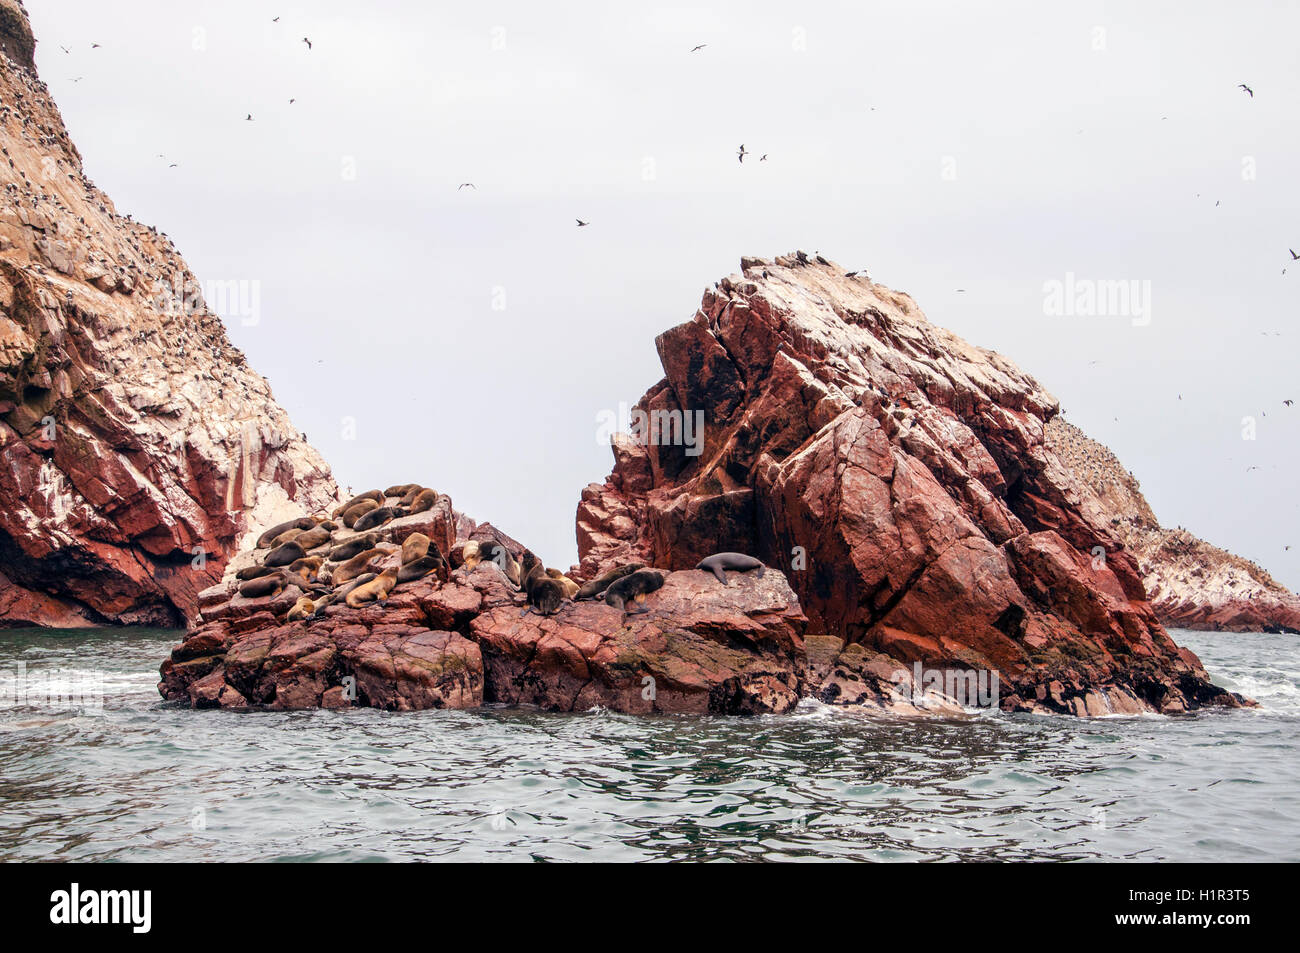 Seelöwen auf Rocke Formation in die Kamera schaut. Islas Ballestas, Paracas, die nationale reserve, Peru. Stockfoto